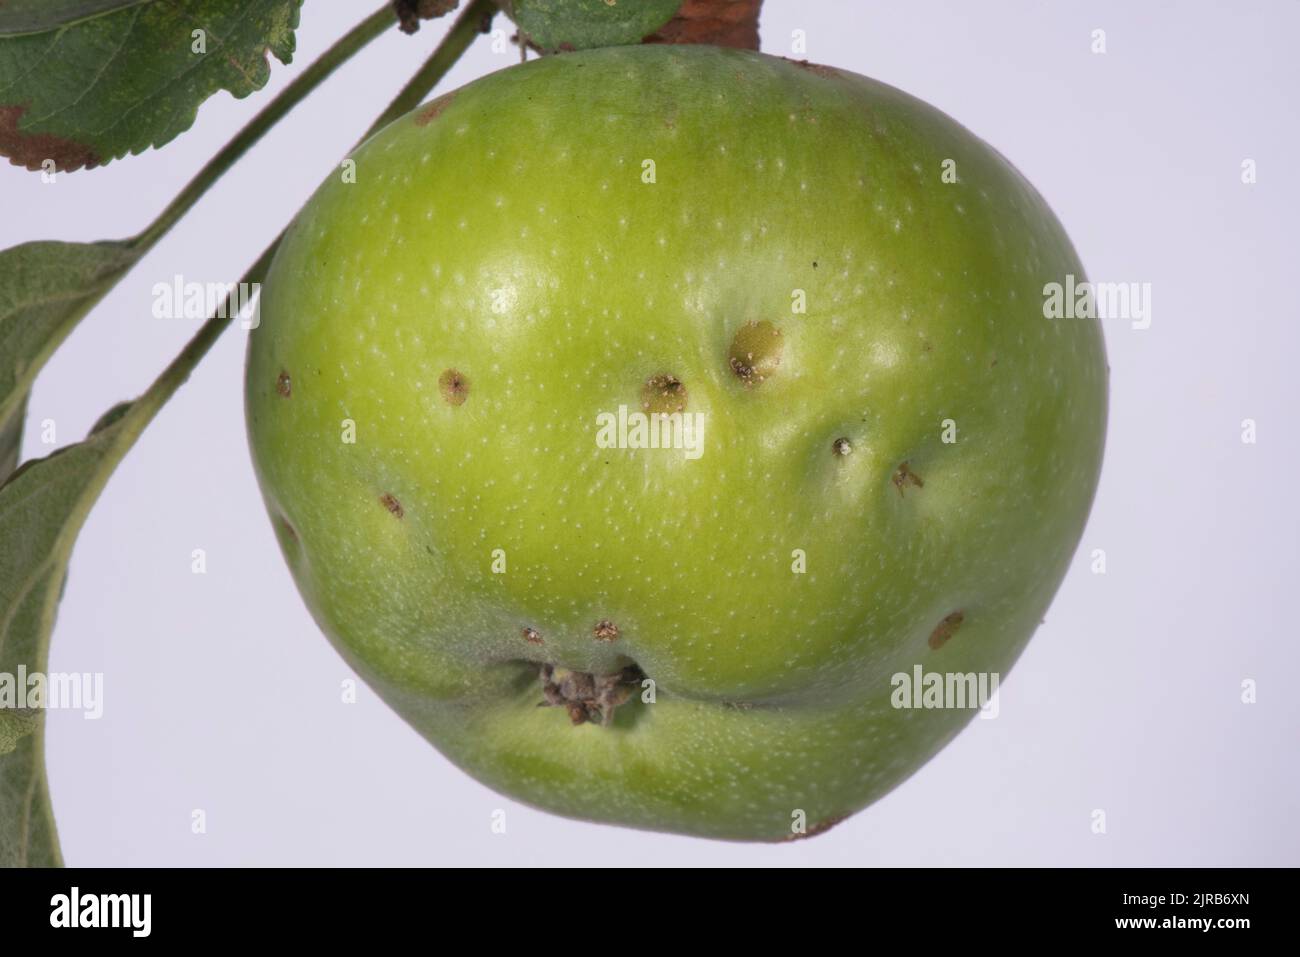 Deformidad de la piel en una fruta de la manzana conocida como hoyo amargo que se piensa para ser un resultado de la deficiencia del calcio, Berkshire, agosto Foto de stock